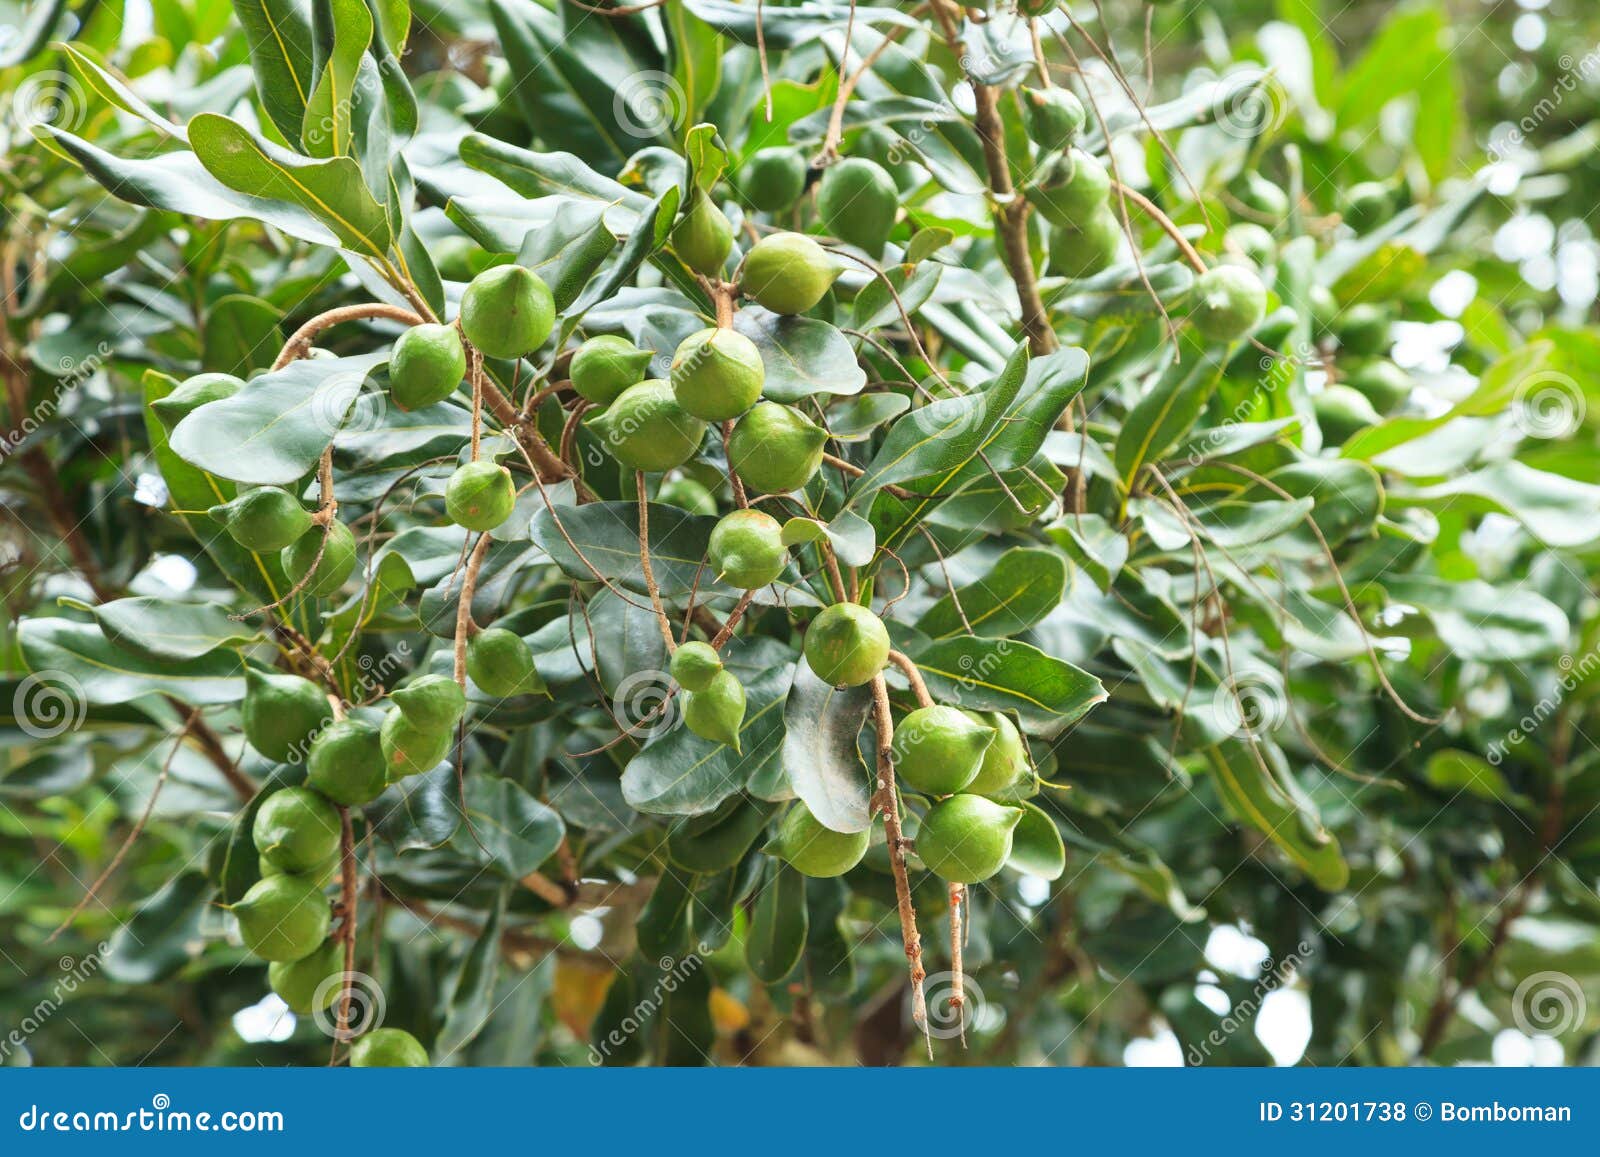 unripe macadamia nuts hanging on tree